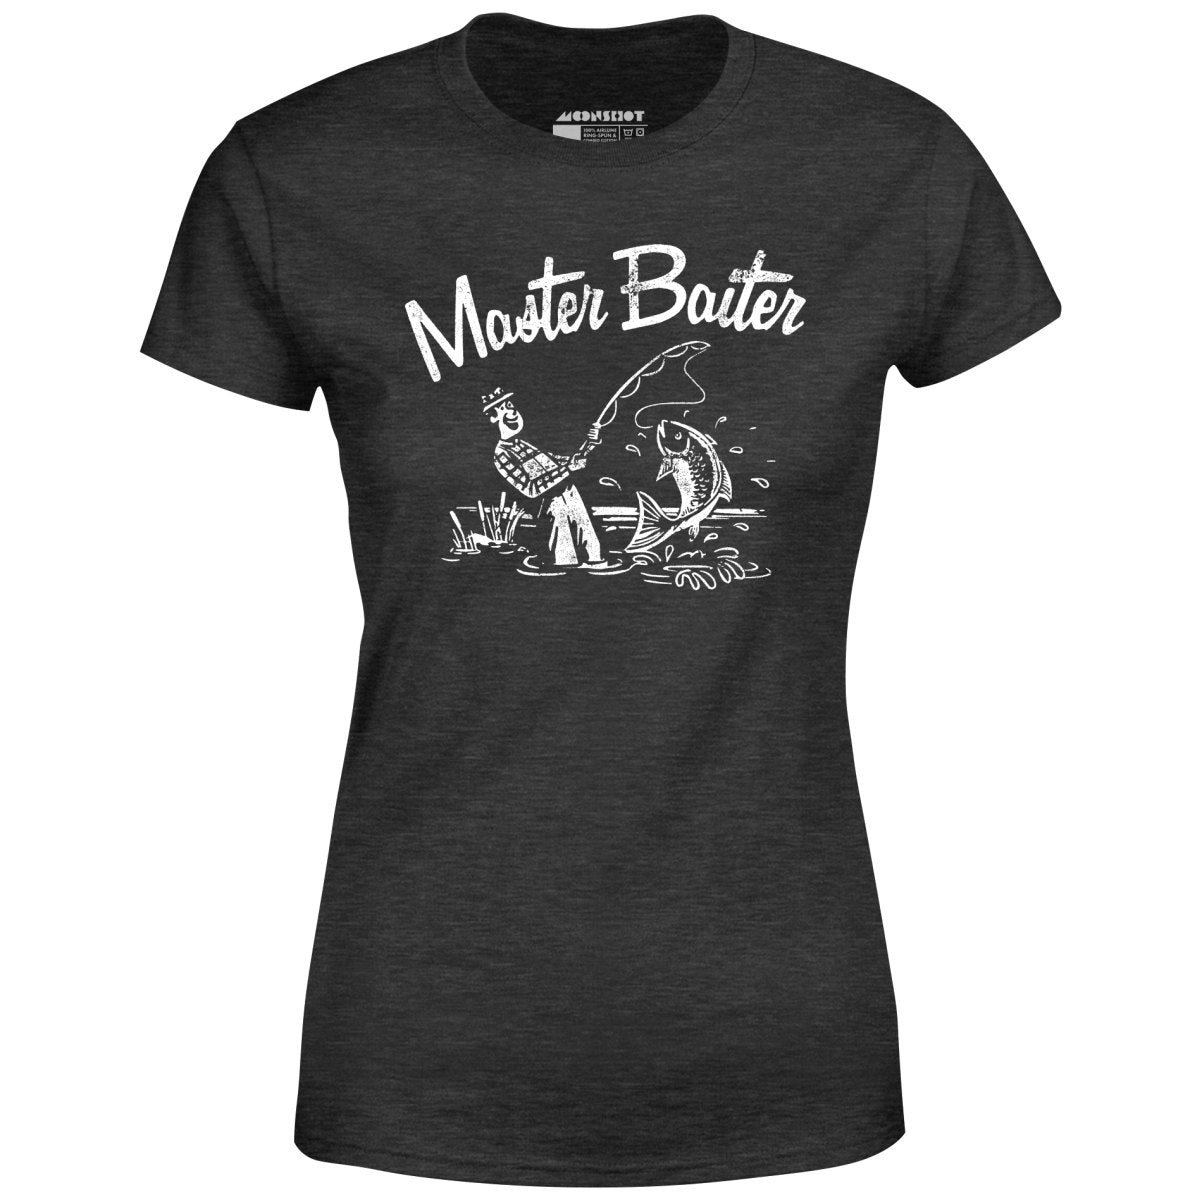 Master Baiter - Women's T-Shirt